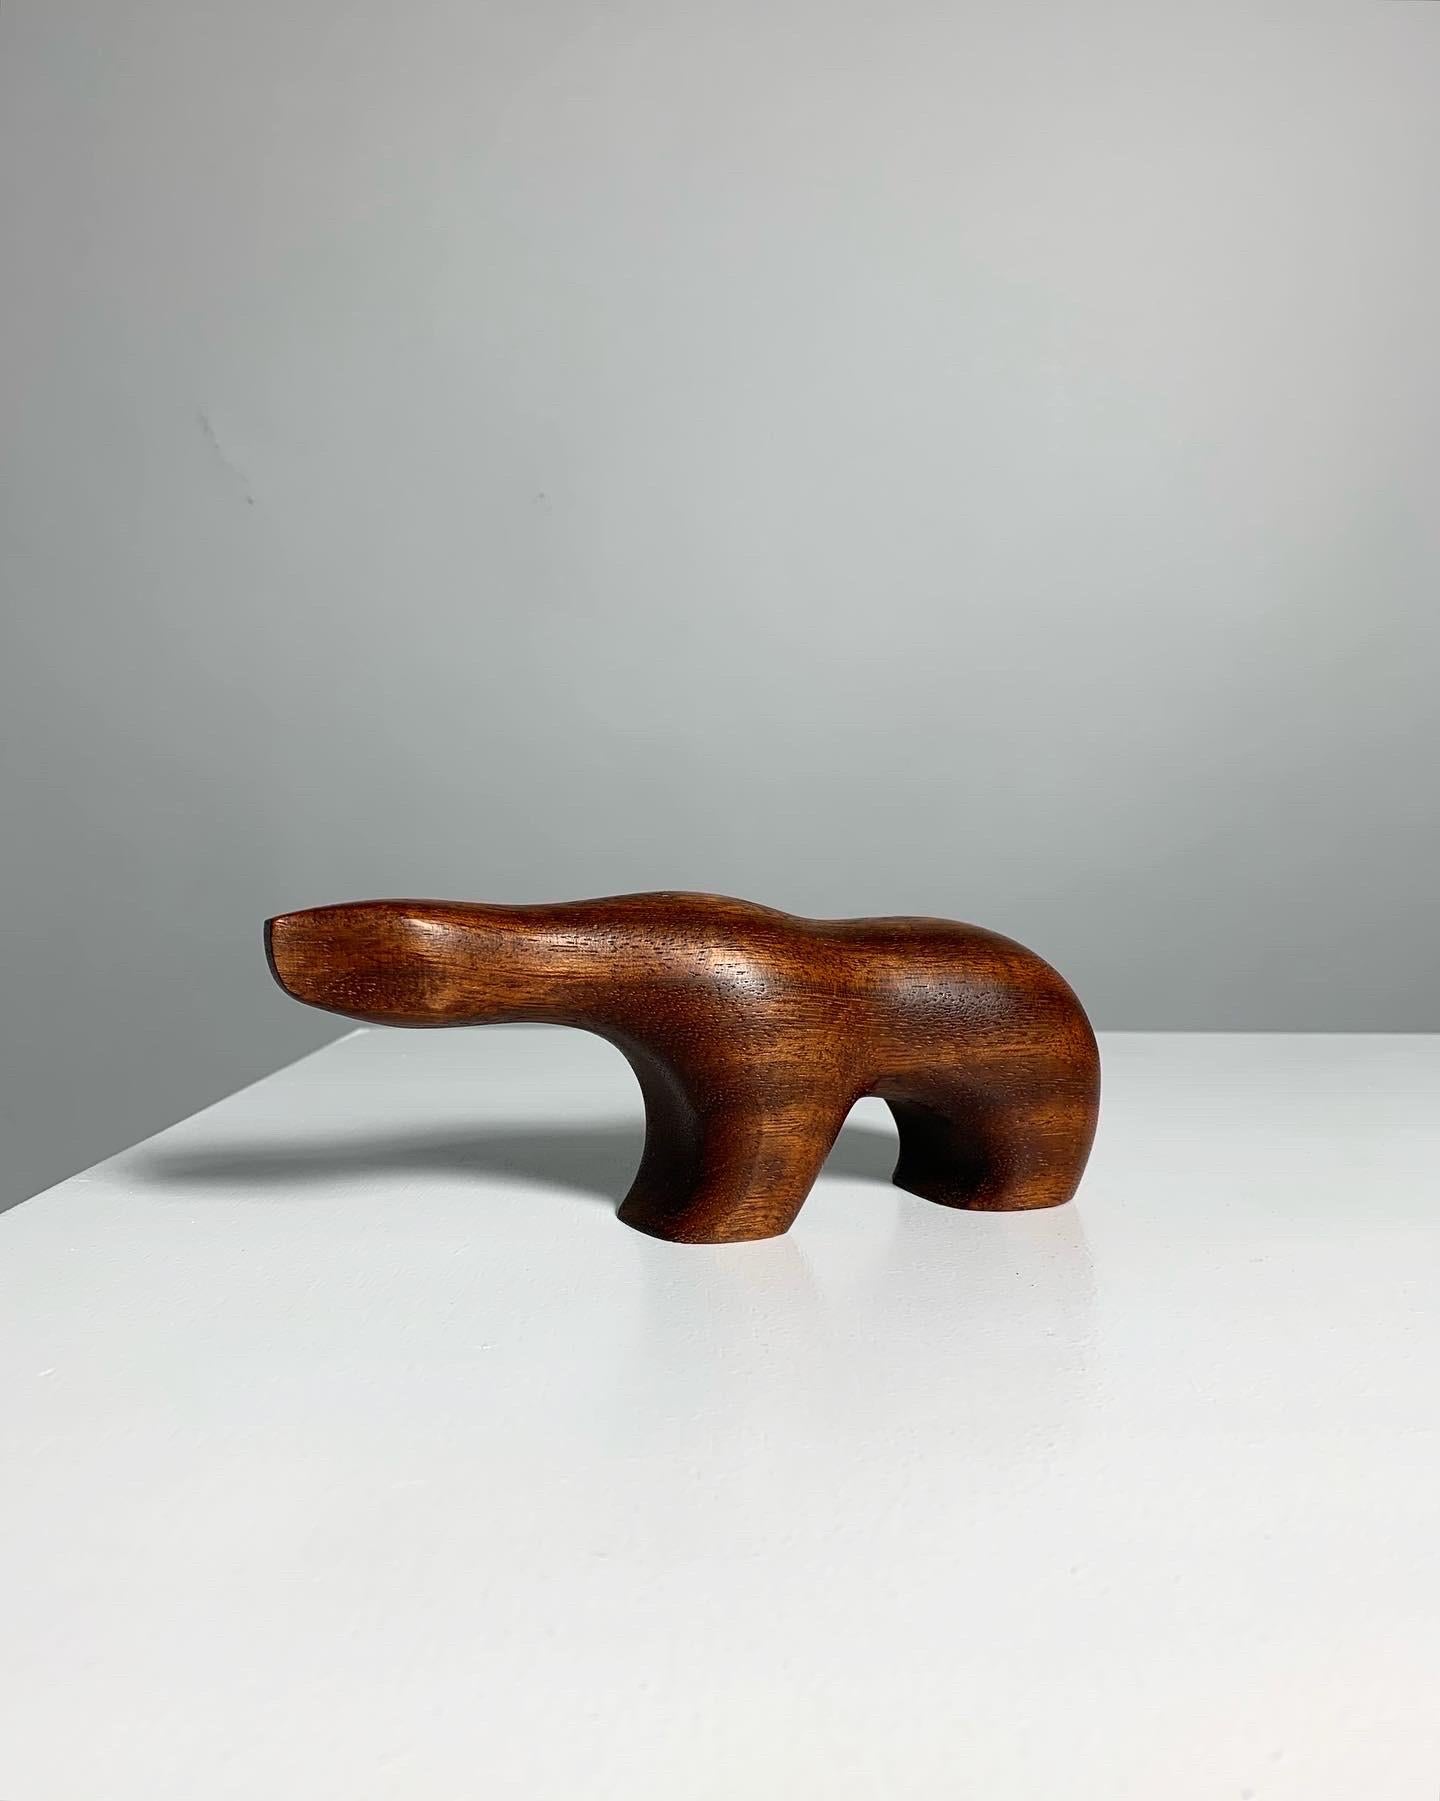 Rare ours polaire en teck du sculpteur norvégien Arne Tjomsland, produit par Hiorth & Østlyngen, Norvège, dans les années 1950. Le bois semble être de l'Afromosia, le fameux teck africain.

Petite version, marquée 